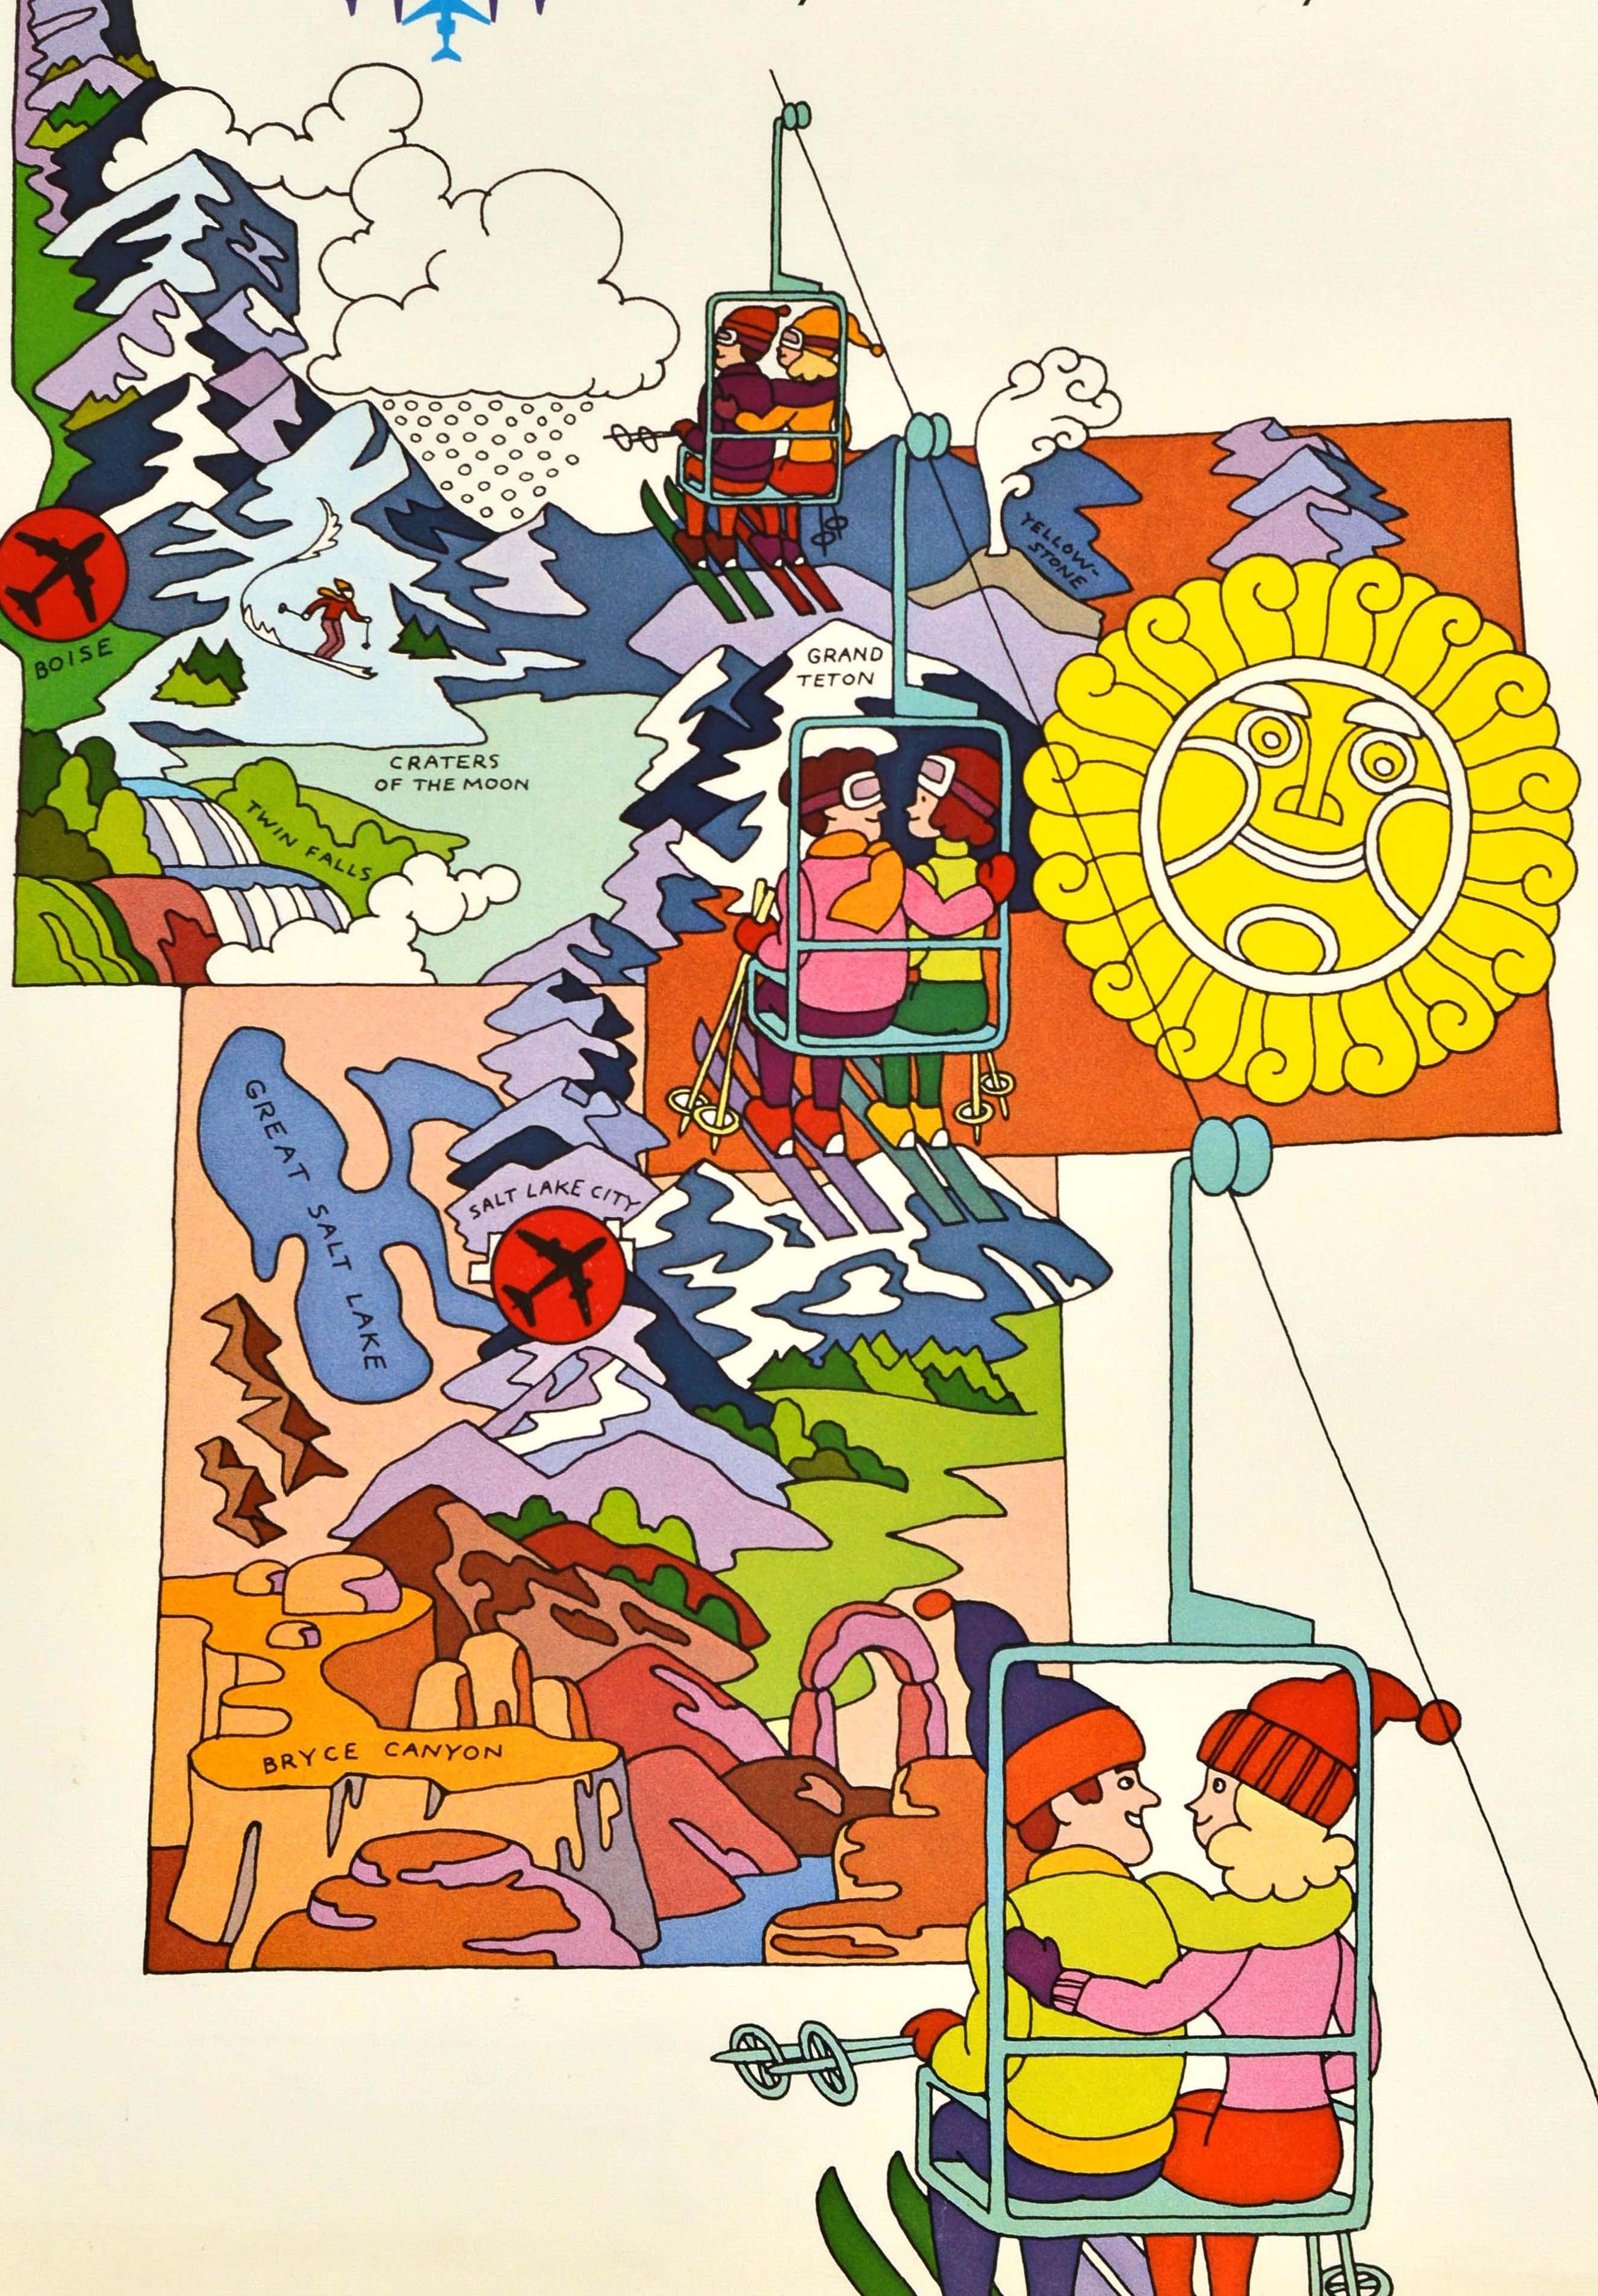 Affiche originale de voyage pour les sports d'hiver - Ski The West by United Air Lines Utah Wyoming Idaho Your land is our land - comportant une illustration amusante représentant des couples sur un téléski gravissant une montagne avec des images